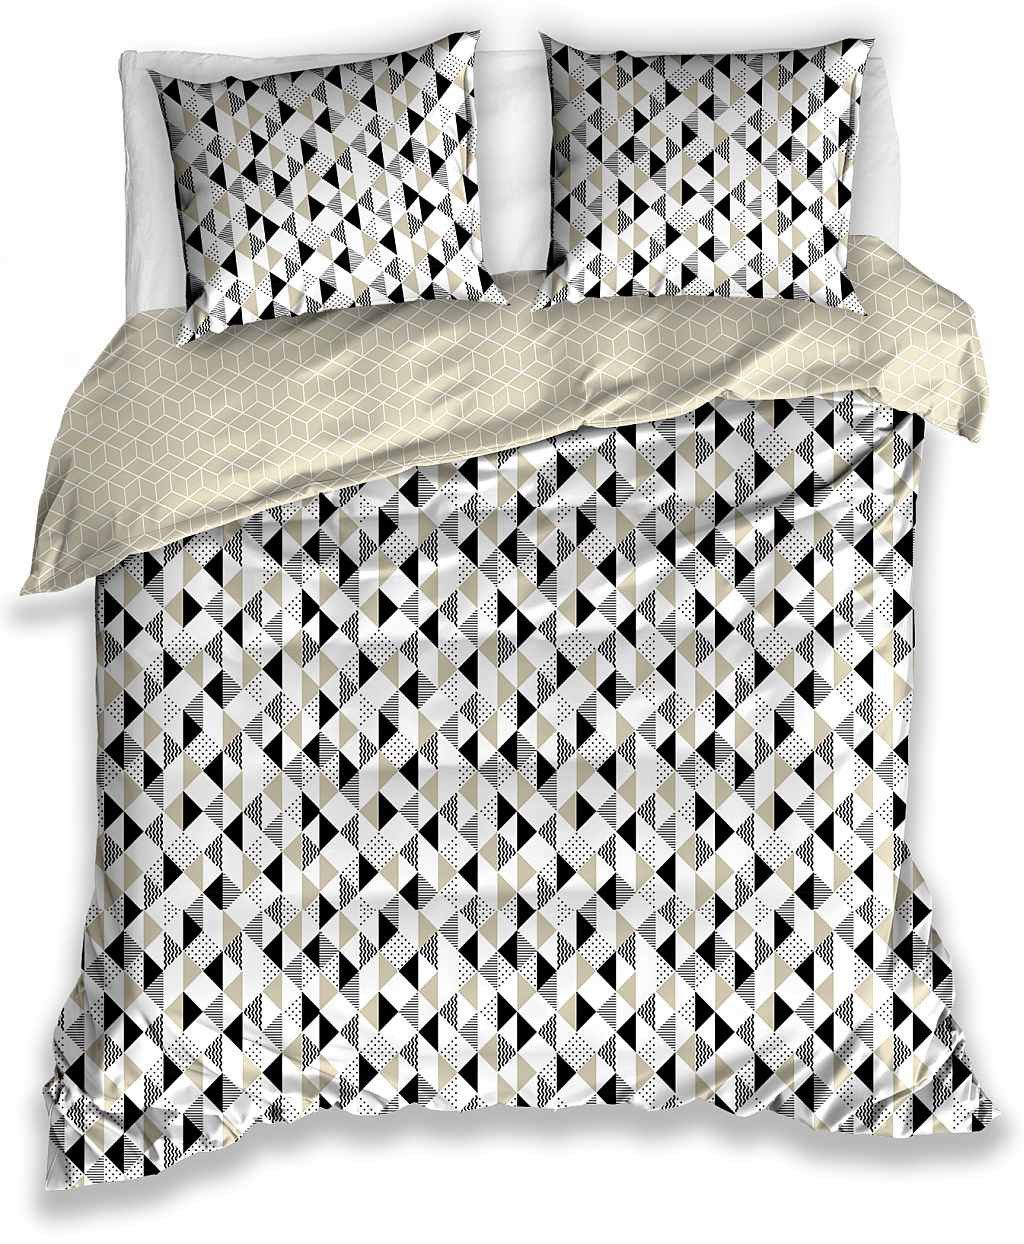 DomTextilu Obojstranné béžové bavlnené posteľné obliečky s geometrickými tvarmi 3 časti: 1ks 200x220 + 2ks 70 cmx80 Béžová 70 x 80 cm 39792-183656